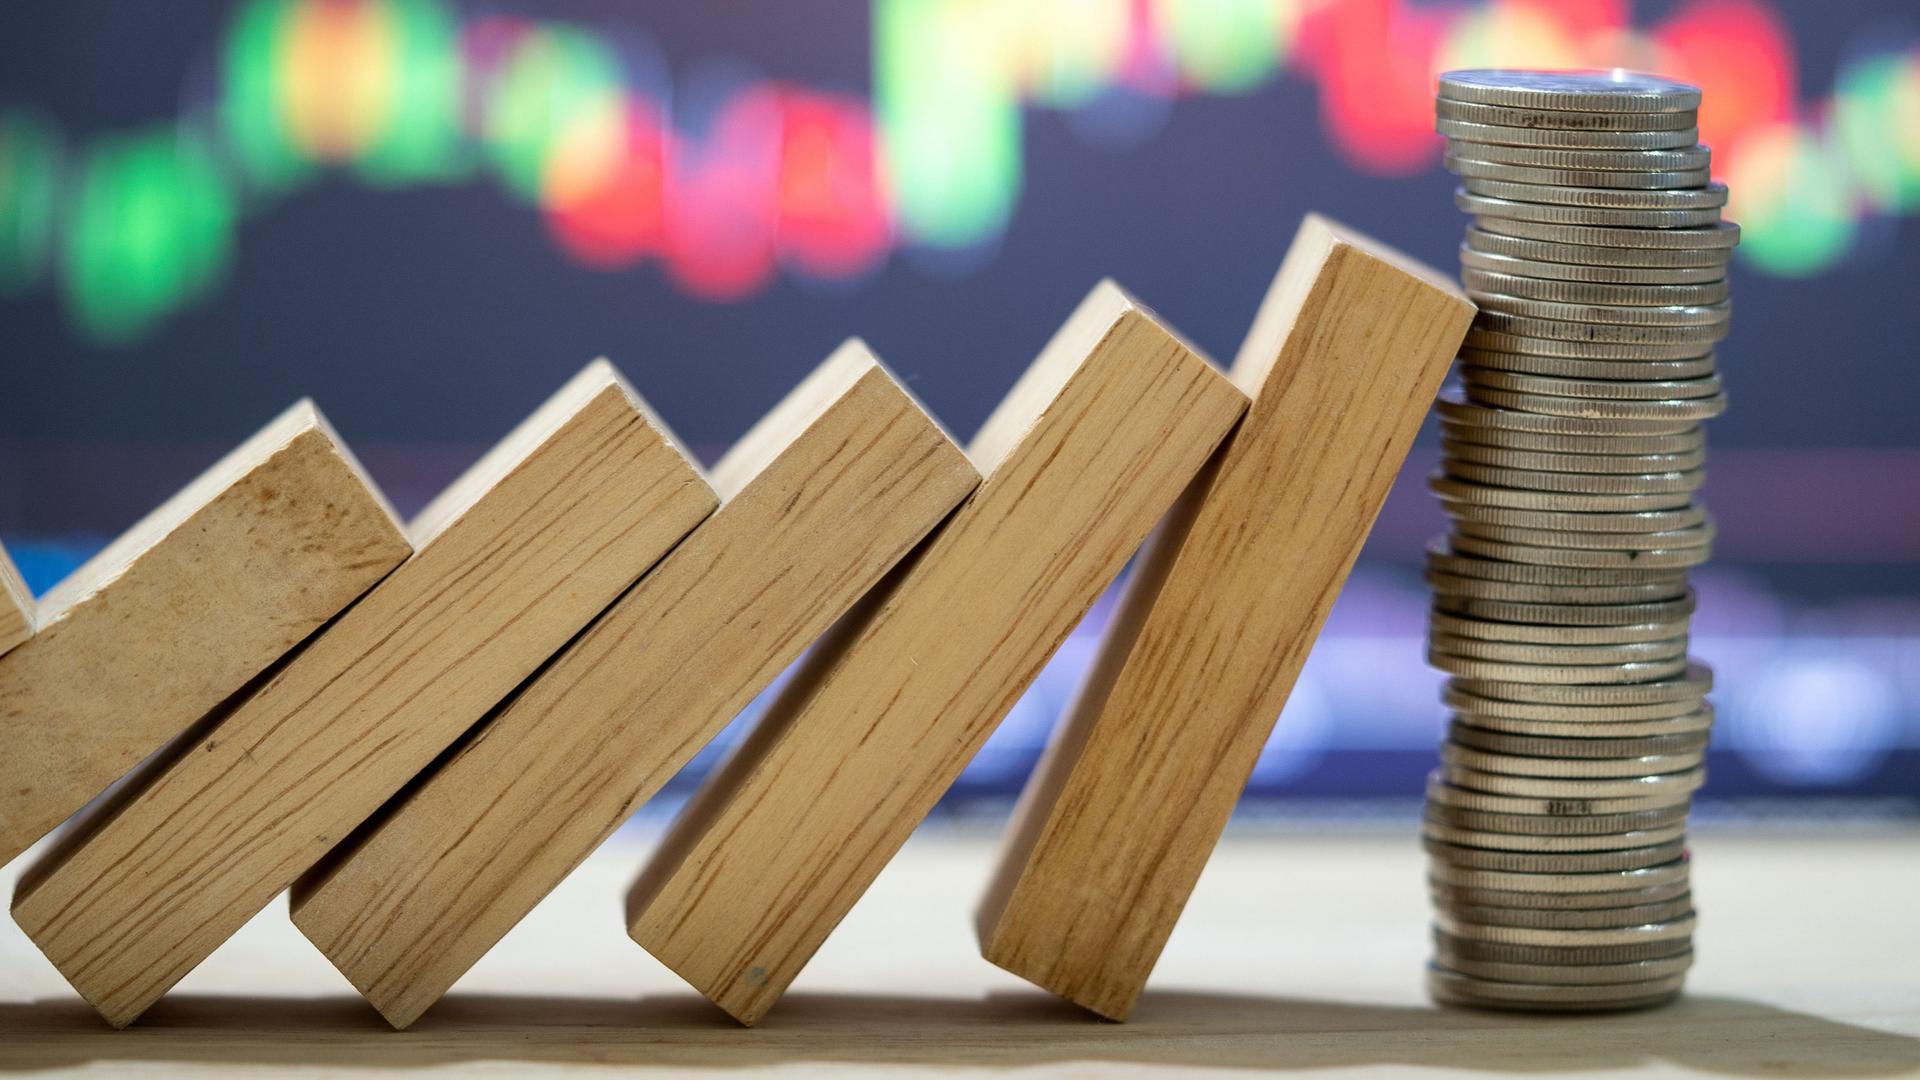 Dominosteine lehnen gegen einen Stapel Münzen. Im Hintergrund sind Aktienkurse auf einem Bildschirm zu sehen.